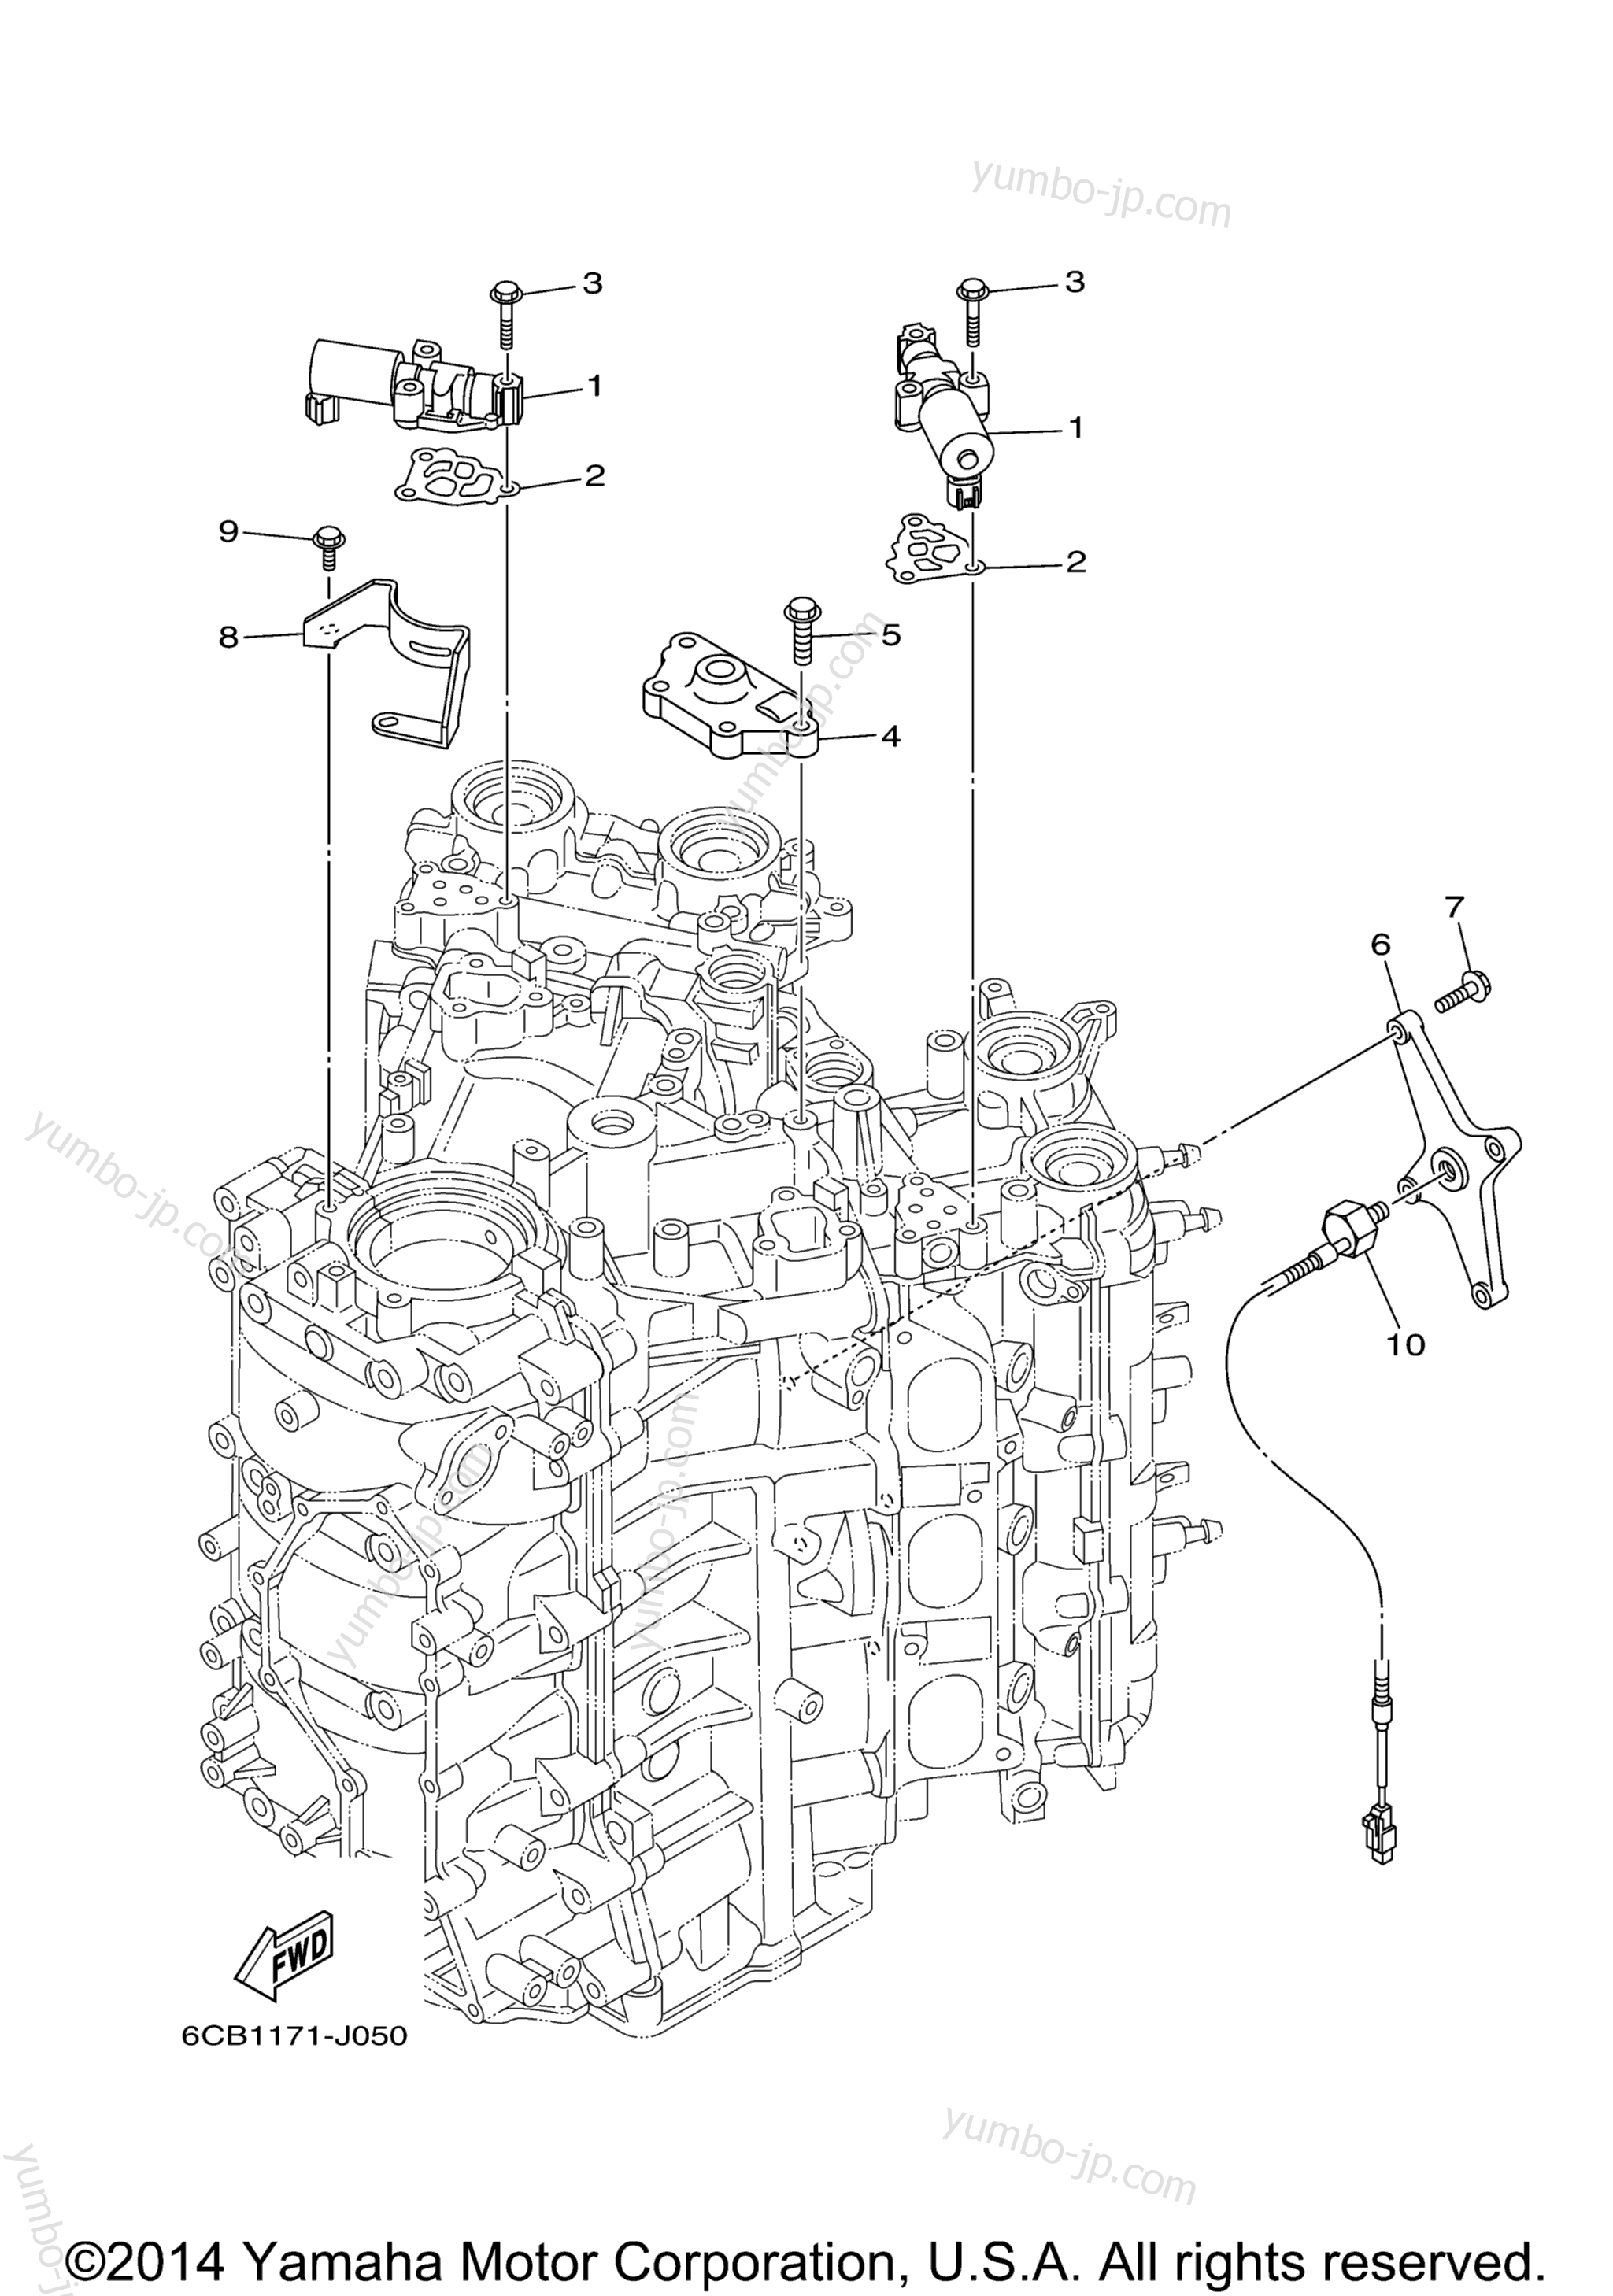 Cylinder Crankcase 3 для лодочных моторов YAMAHA LF225XCA_0 (0112) 2006 г.